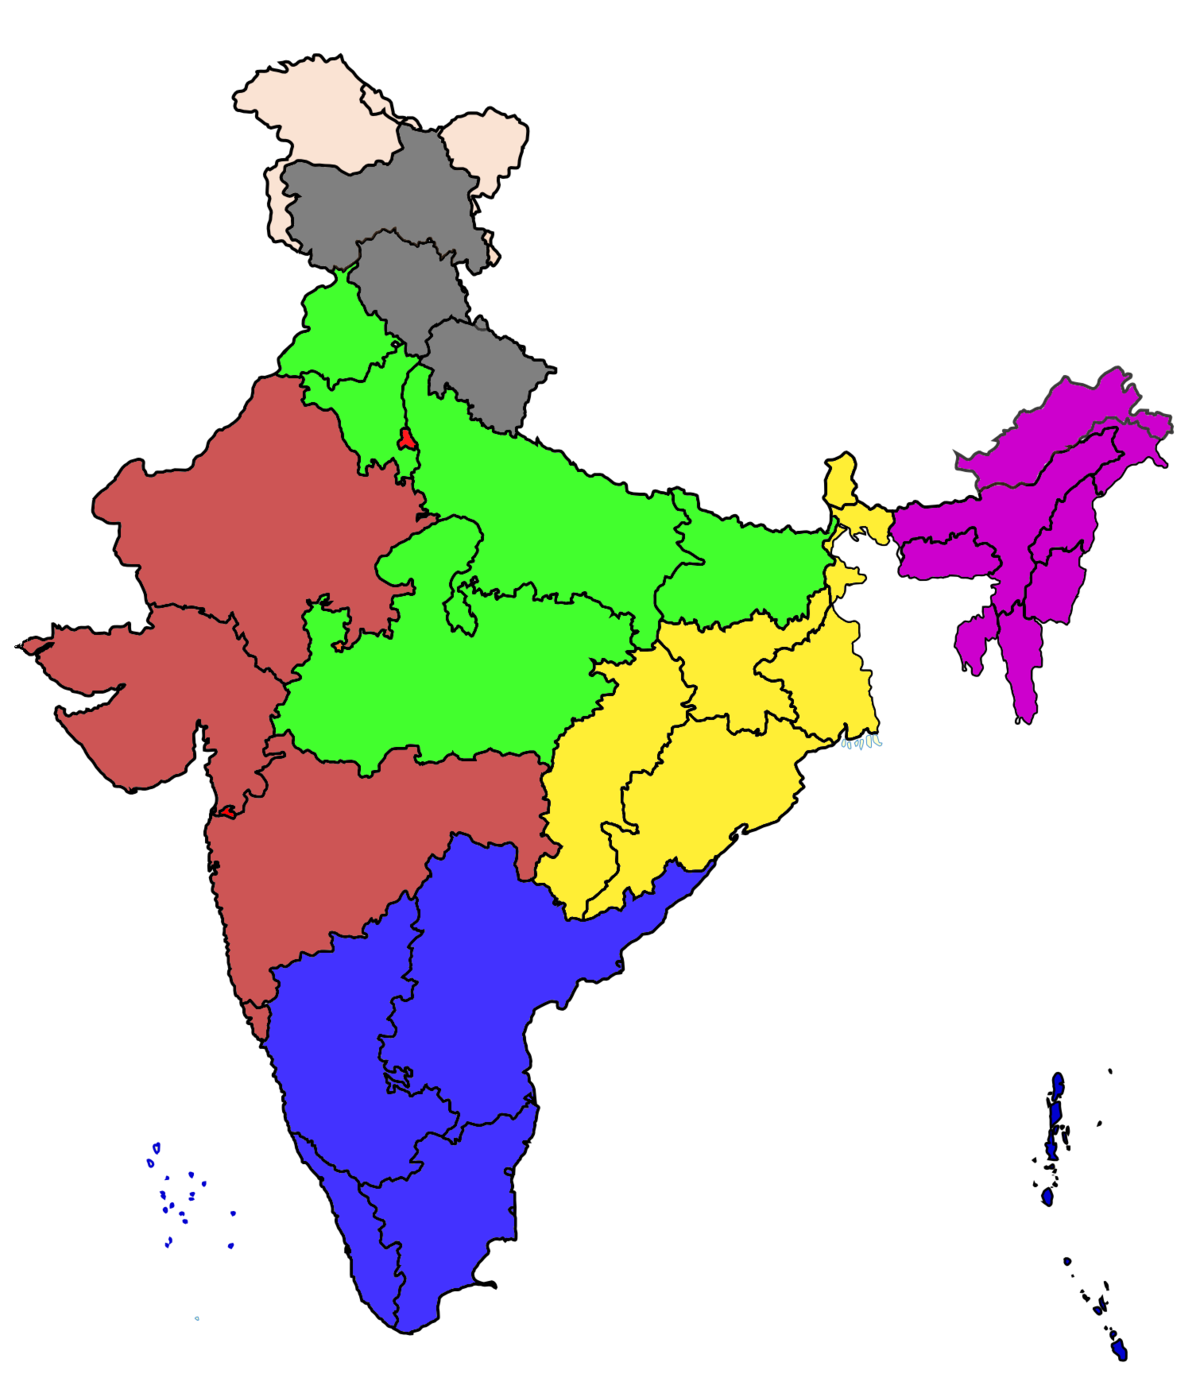 India Map PNG Image Transparent